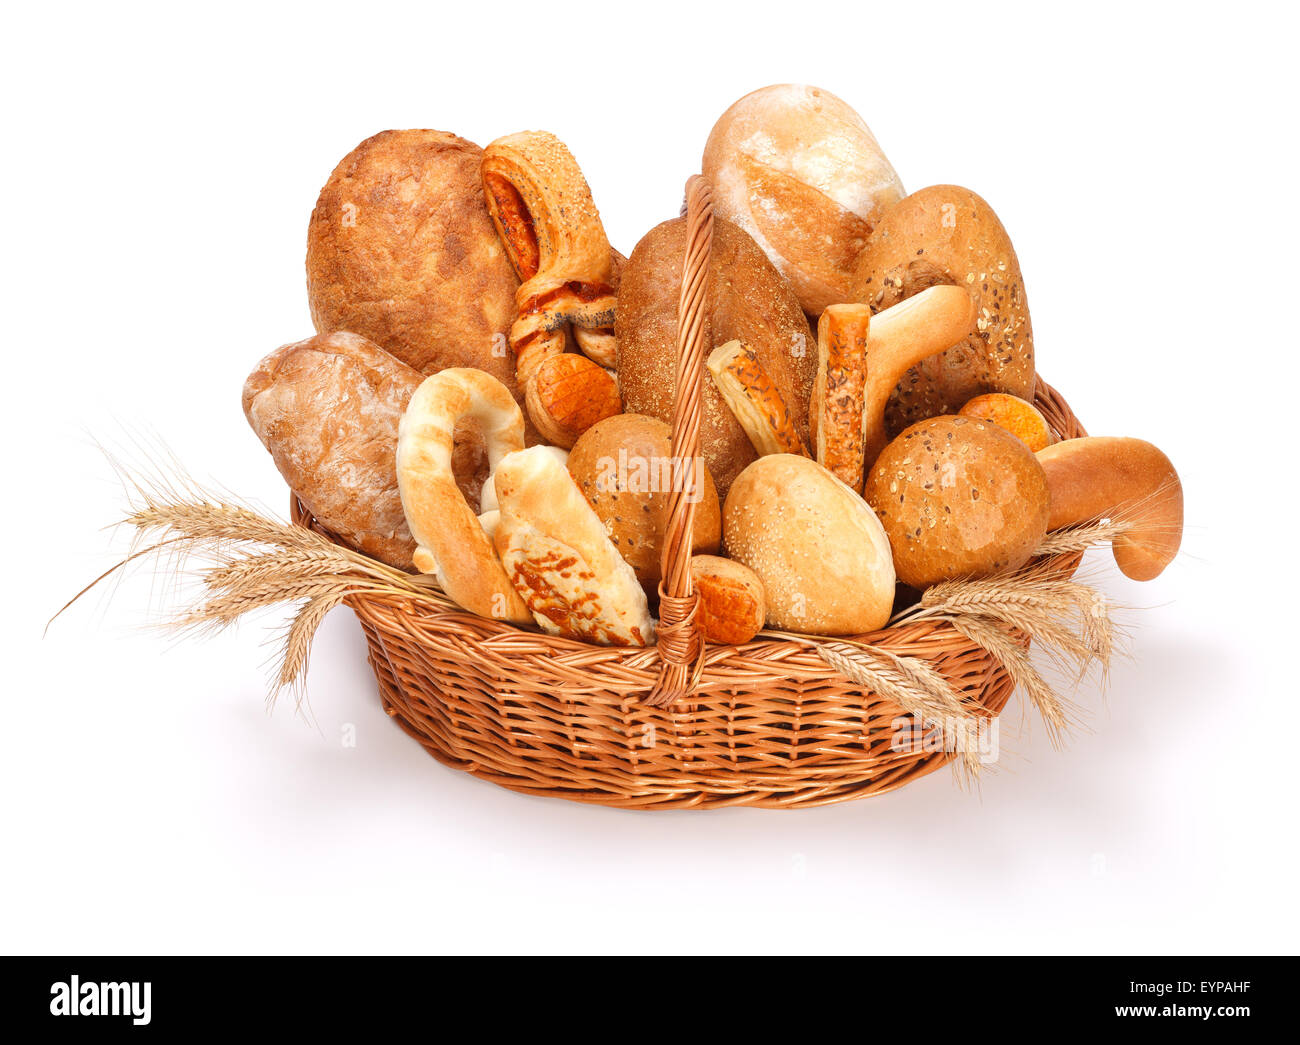 Pane fresco e pasticcini al cesto su sfondo bianco Foto Stock